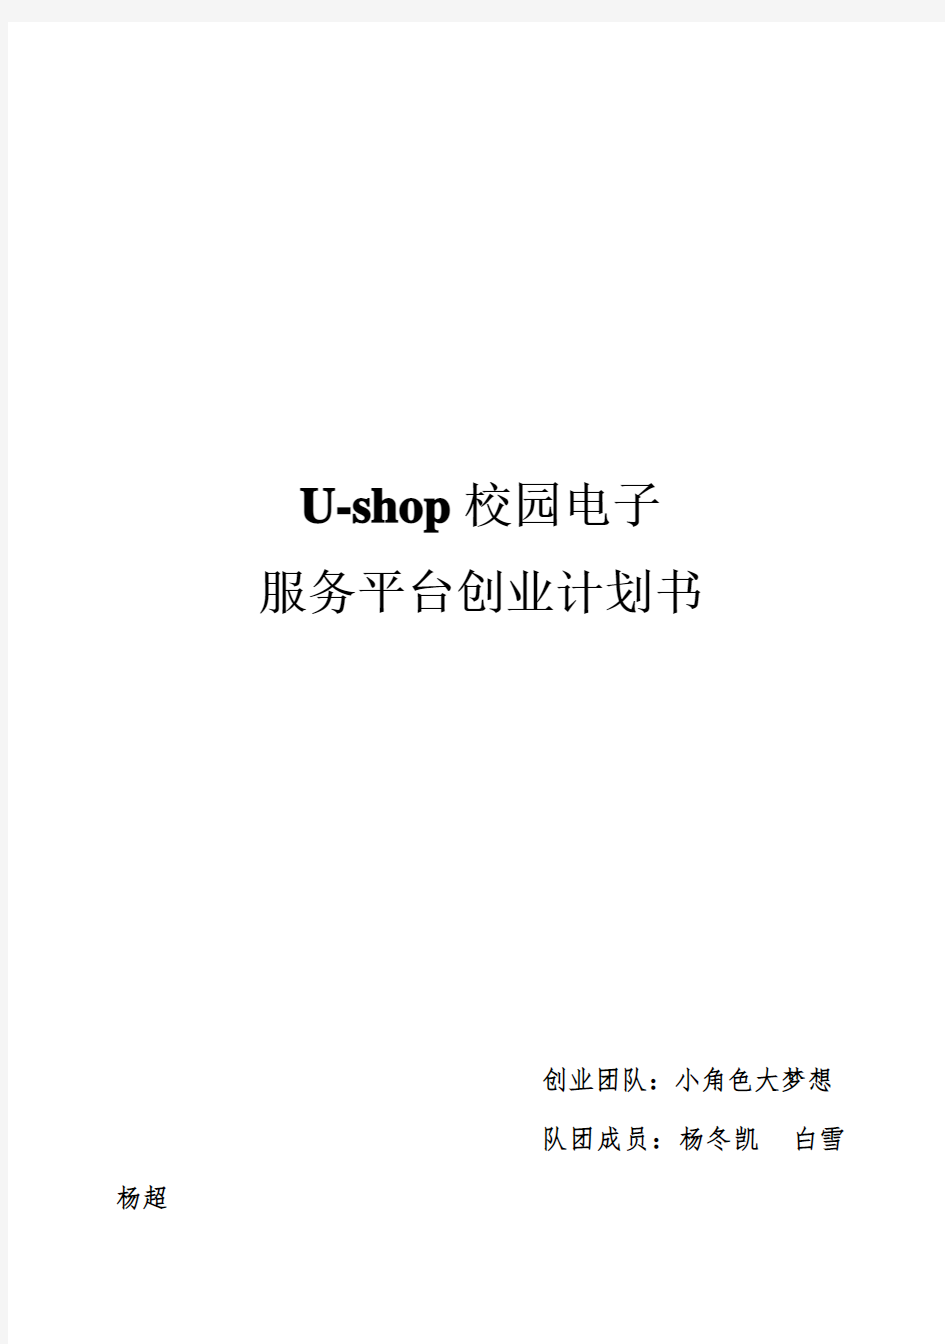 (强烈推荐)U-shop校园电子商务服务平台项目创业计划书